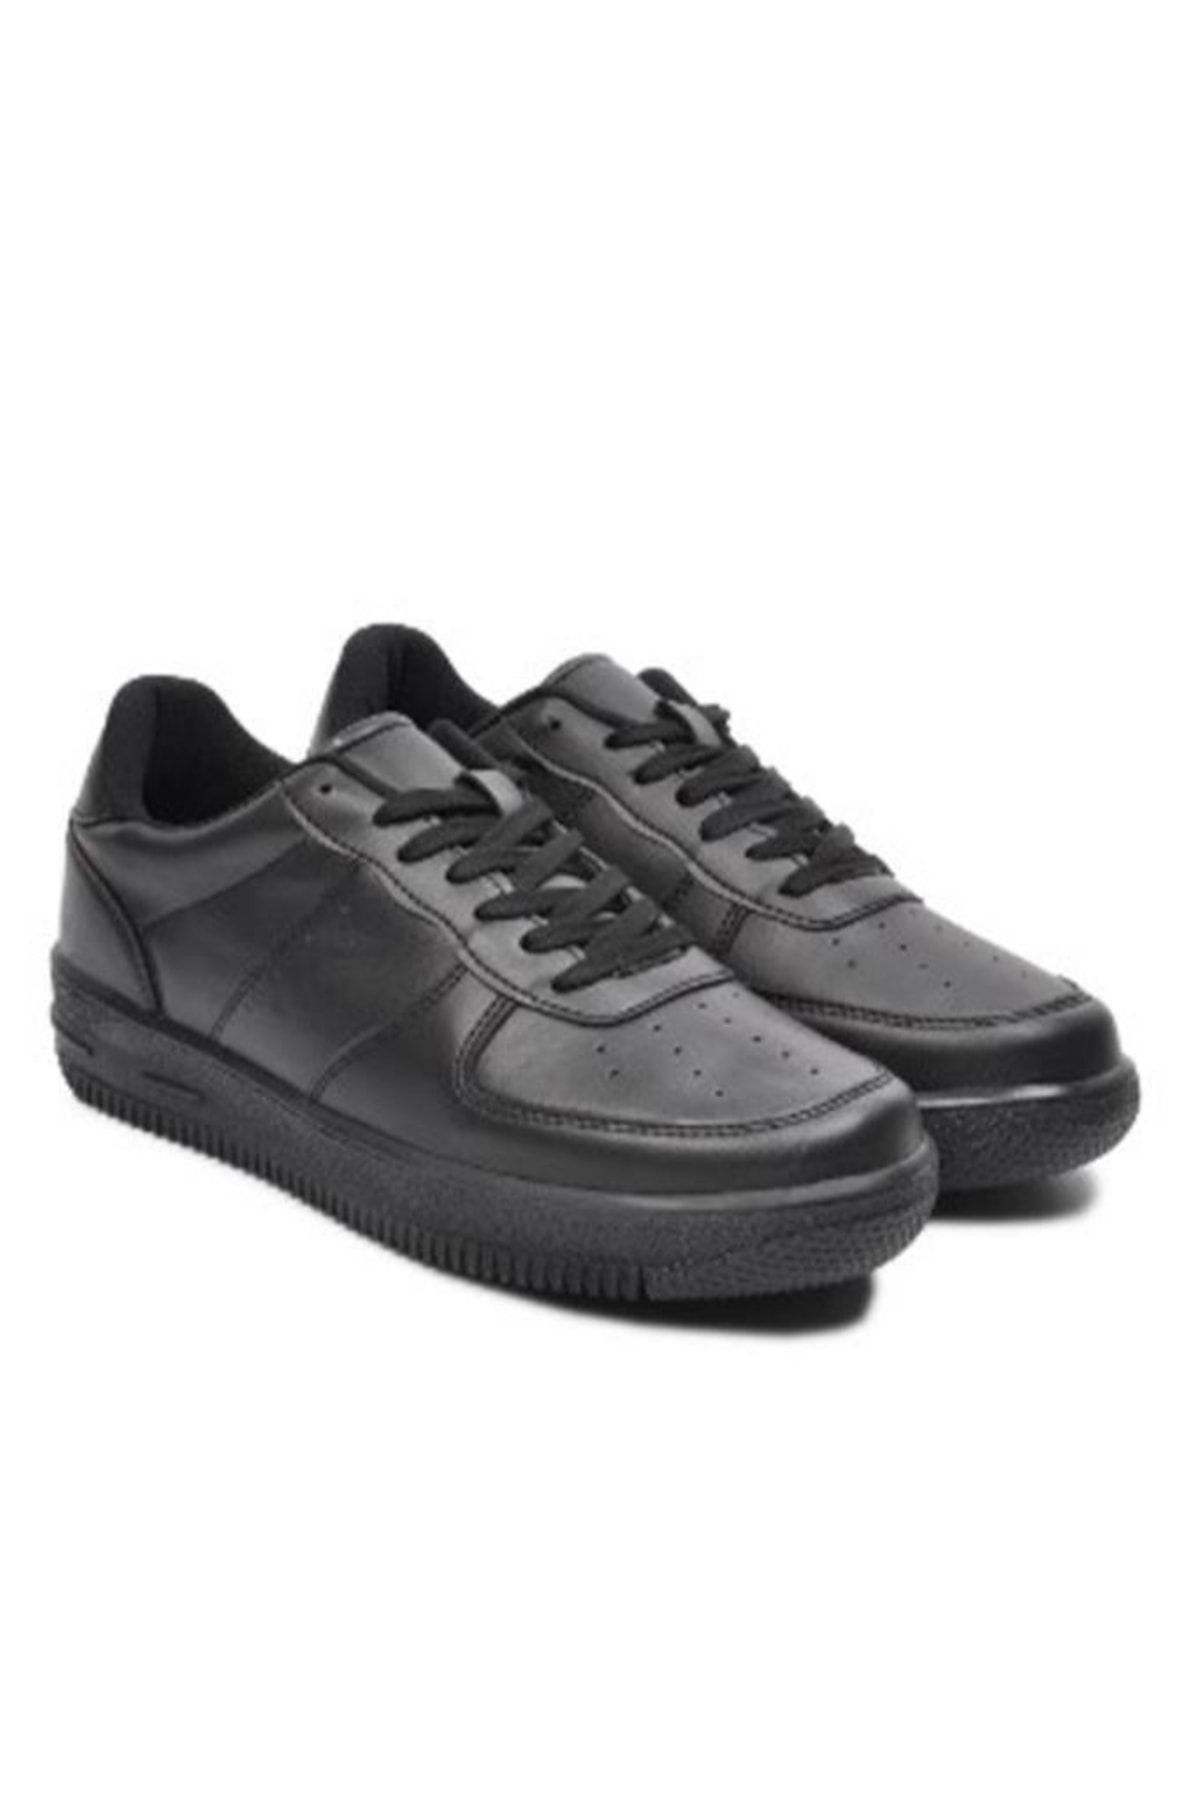 Zigana Siyah - 002-23 Deri Sneakers Ayakkabı 36-40